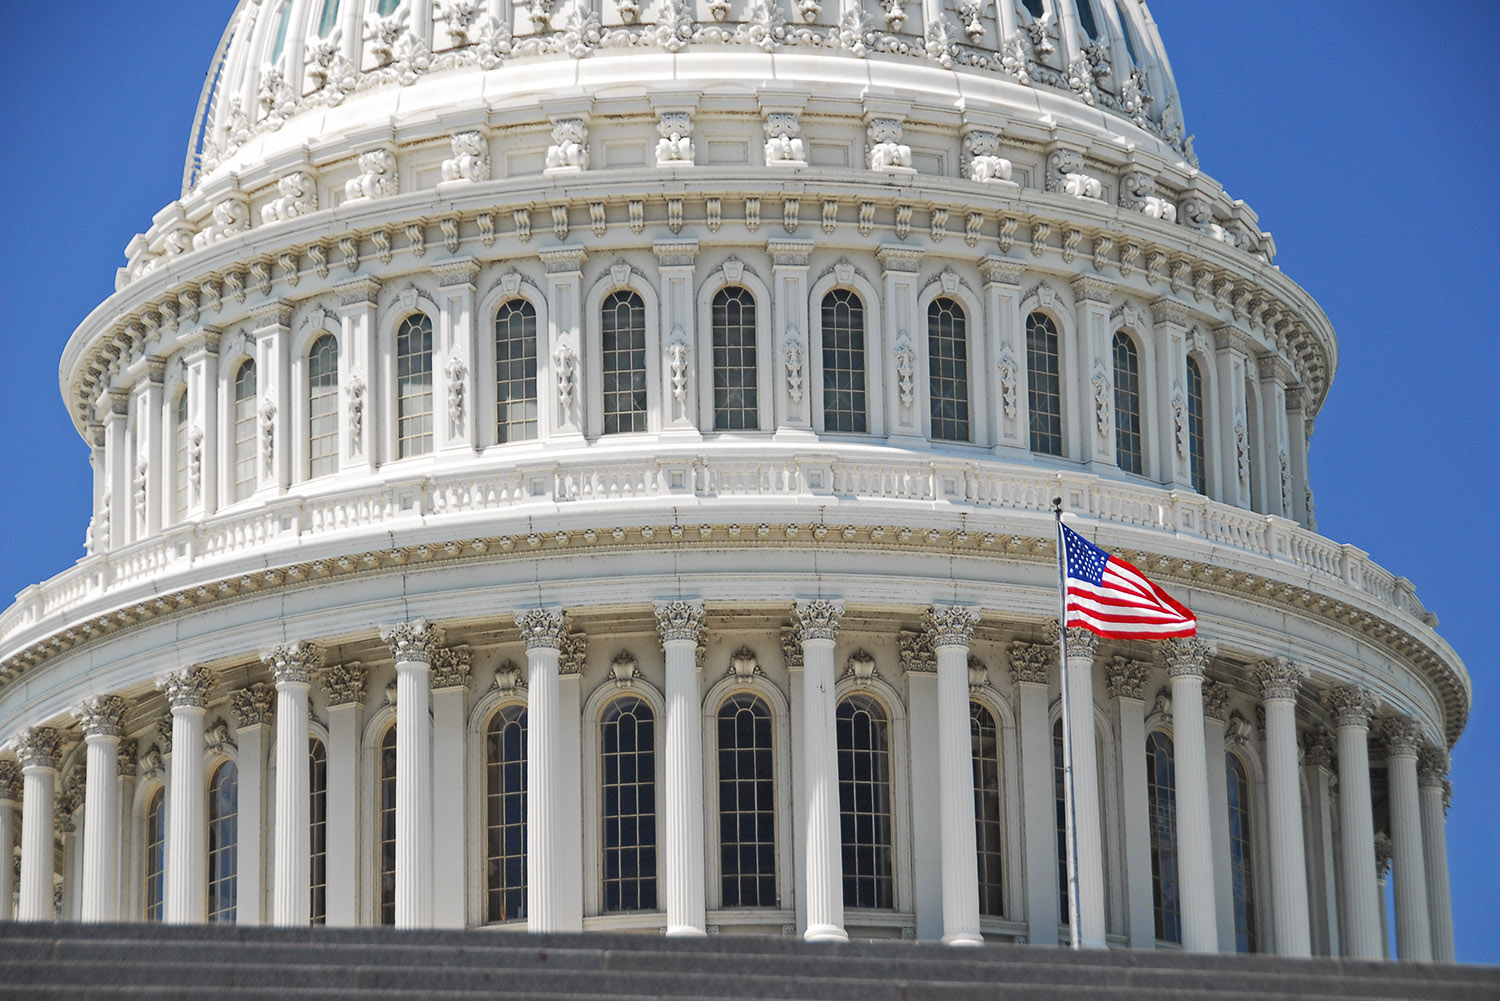 US_Capitol_Dome_Flag_Closeup_Detail_Congress_House_of_Representatives_Federal_Government_Tourism_Washington_DC.jpg